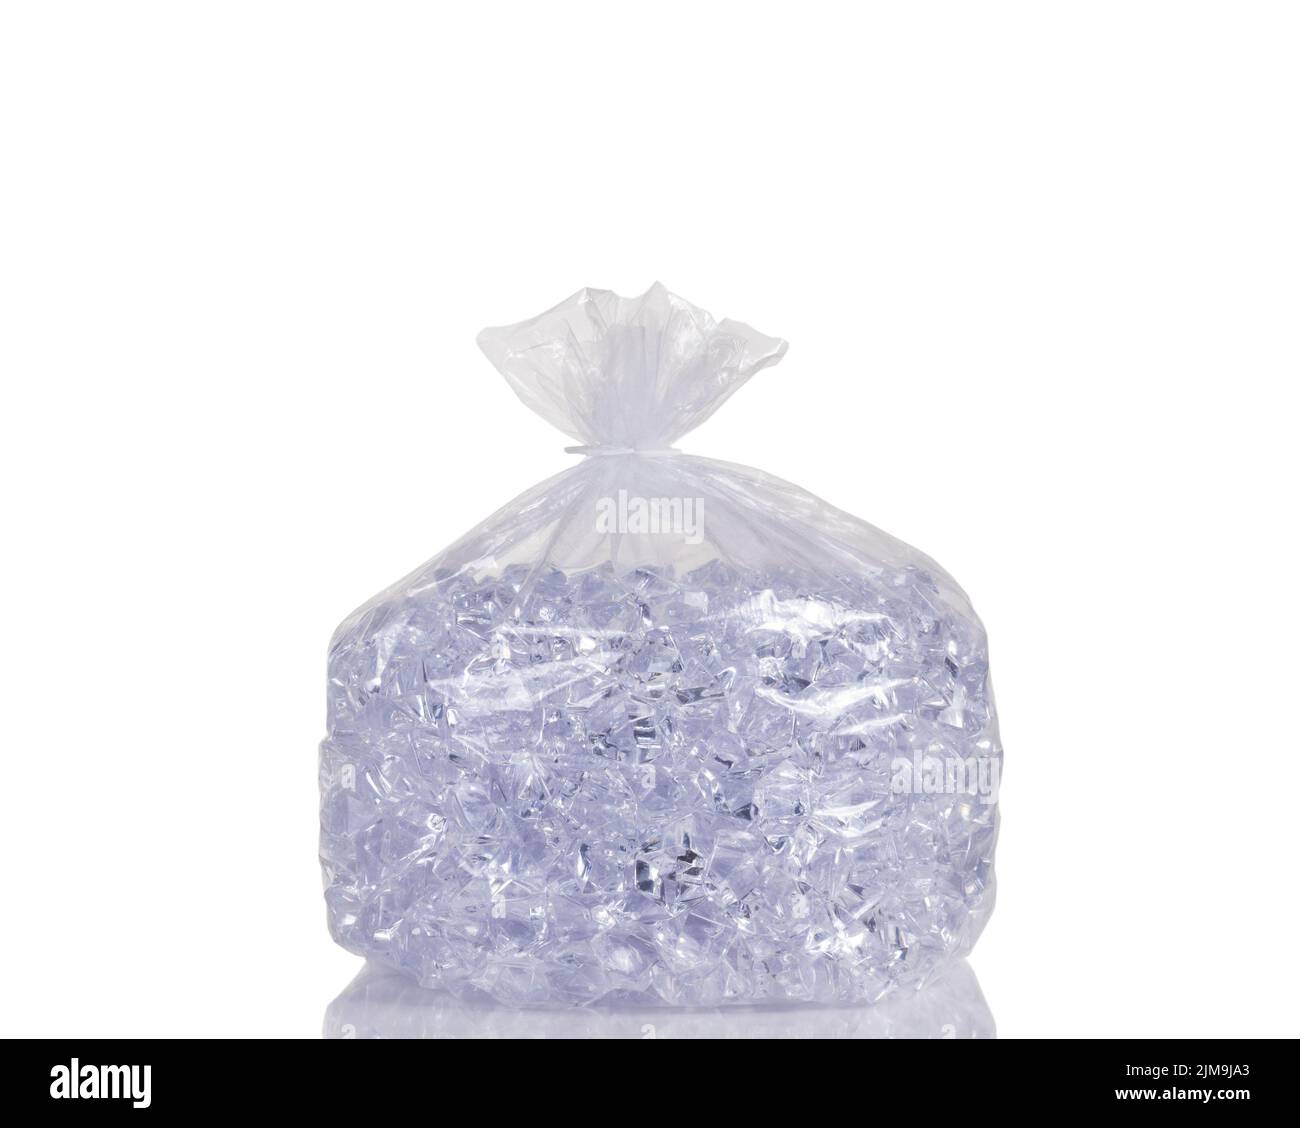 Bolsa de plástico transparente llena de cubitos de hielo aislados sobre fondo blanco Foto de stock